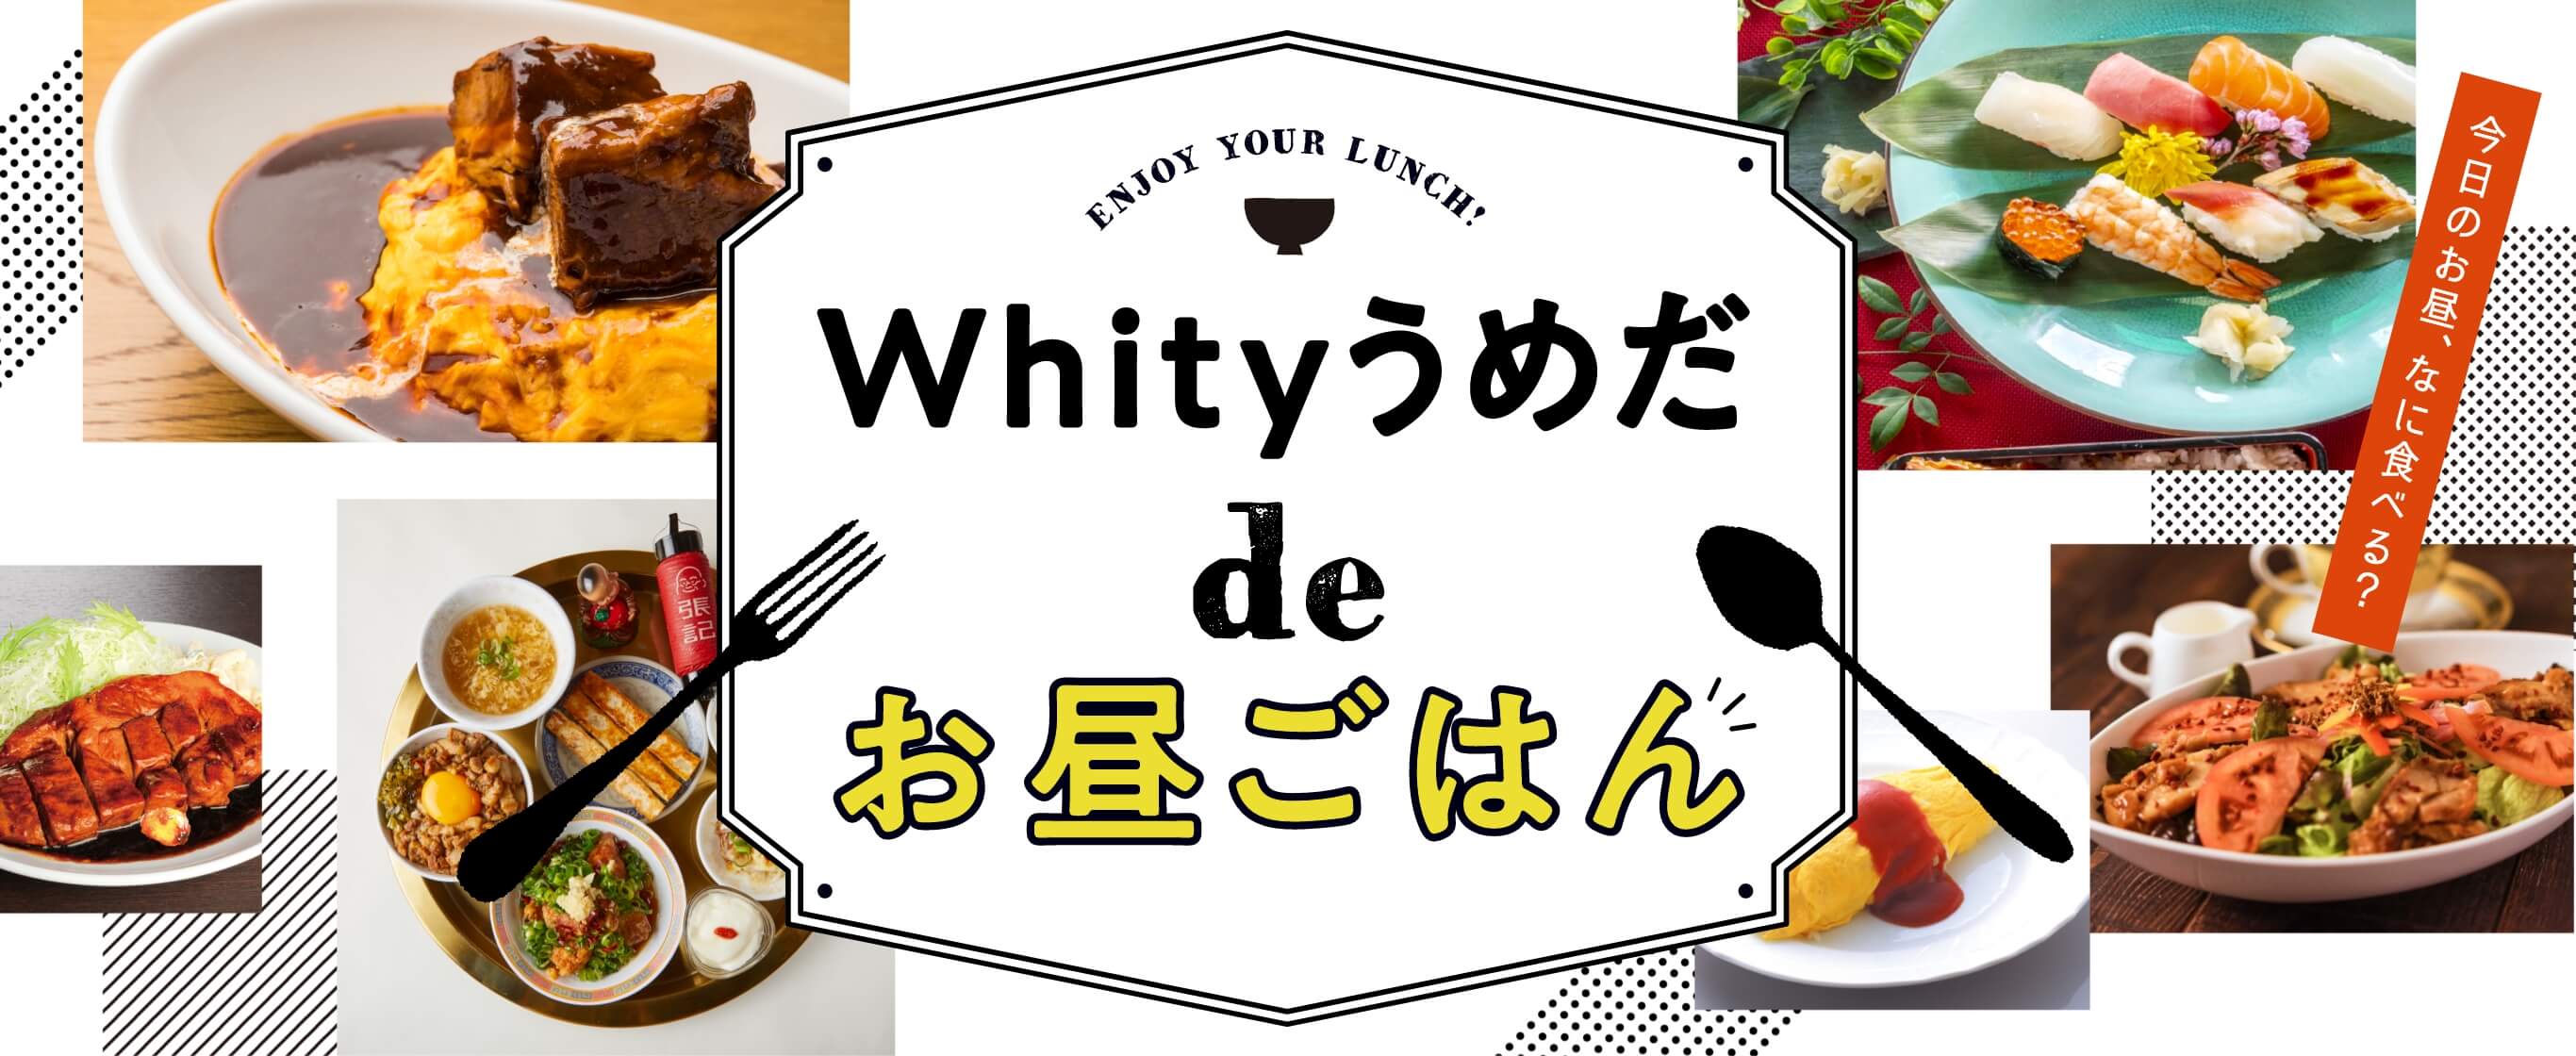 Whity umeda de午餐